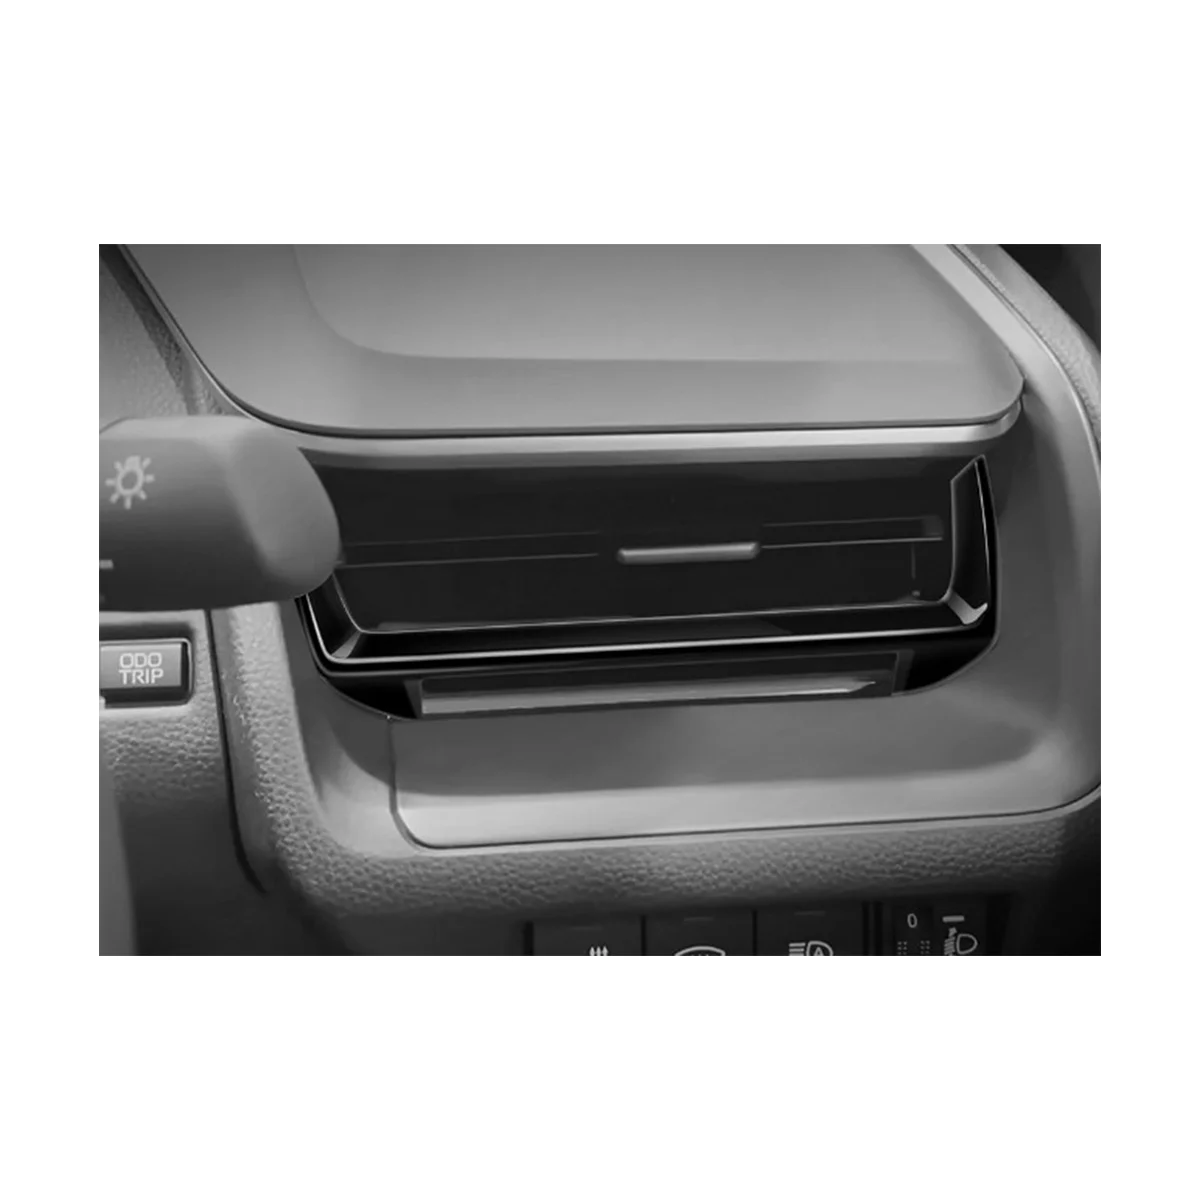  Автомобильная ярко-черная автомобильная консоль Розетка для кондиционера Накладка на раму для Toyota Prius 60 Series 2020-2023